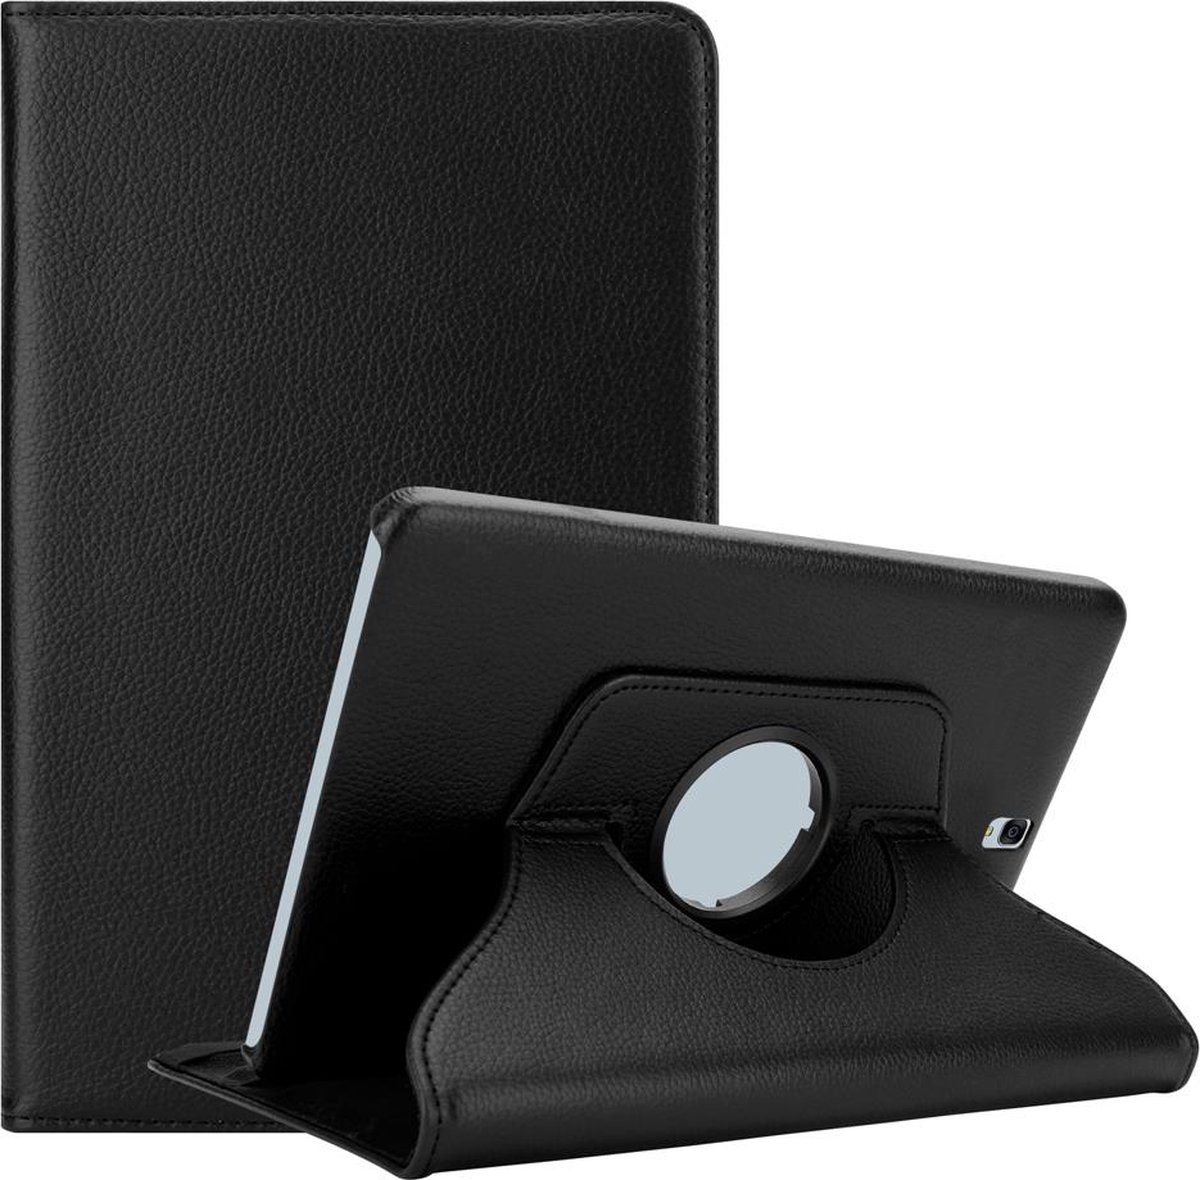 Cadorabo Tablet Hoesje voor Samsung Galaxy Tab S3 (9.7 inch) in OUDERLING ZWART - Beschermhoes ZONDER auto Wake Up, met stand functie en elastische band sluiting Book Case Cover Etui